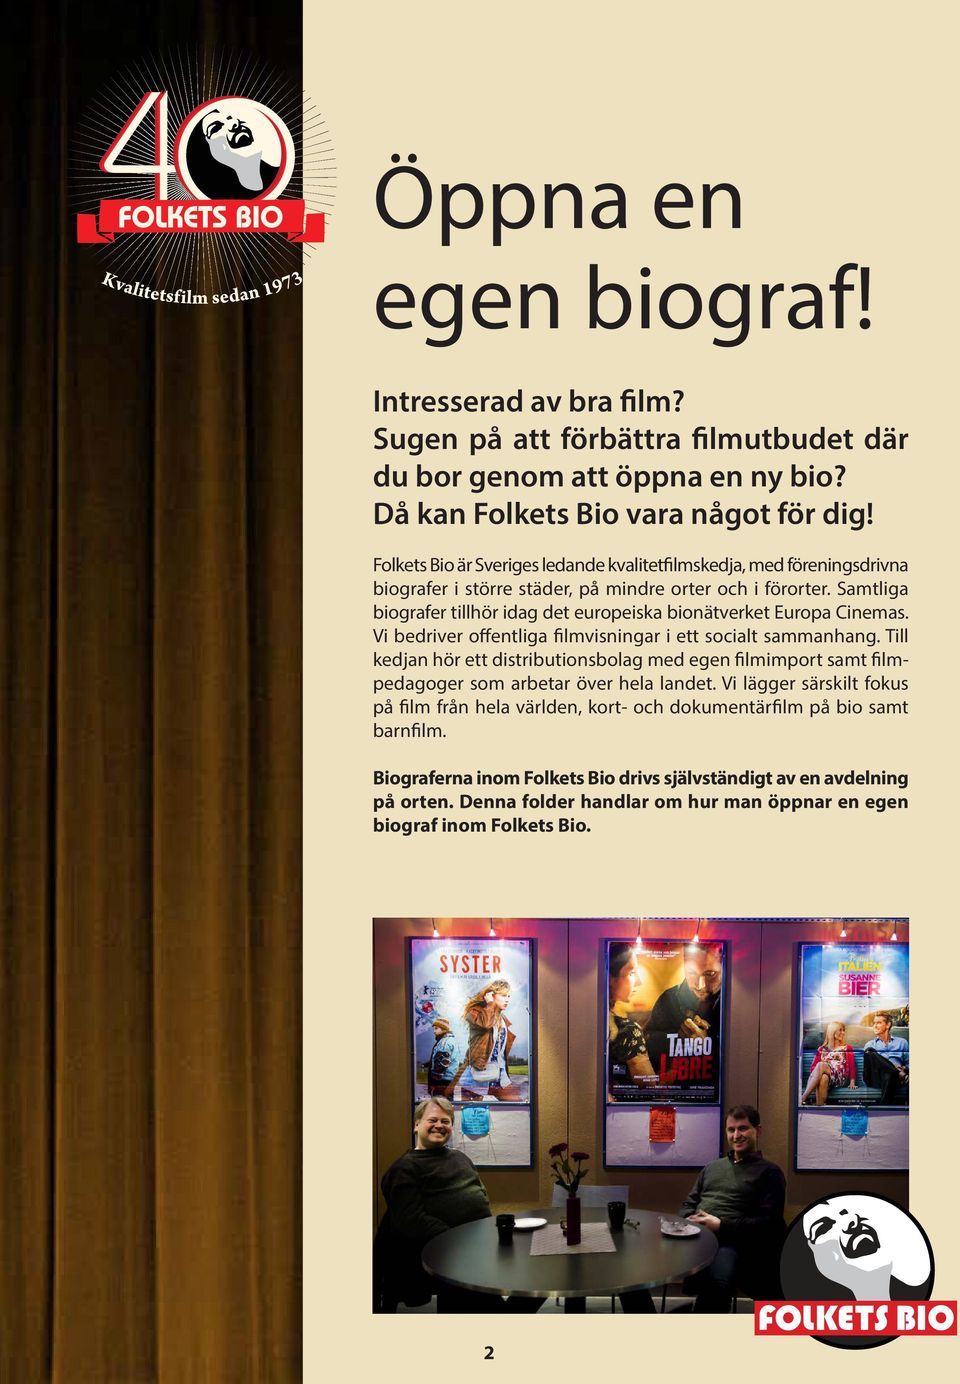 Samtliga biografer tillhör idag det europeiska bionätverket Europa Cinemas. Vi bedriver offentliga filmvisningar i ett socialt sammanhang.